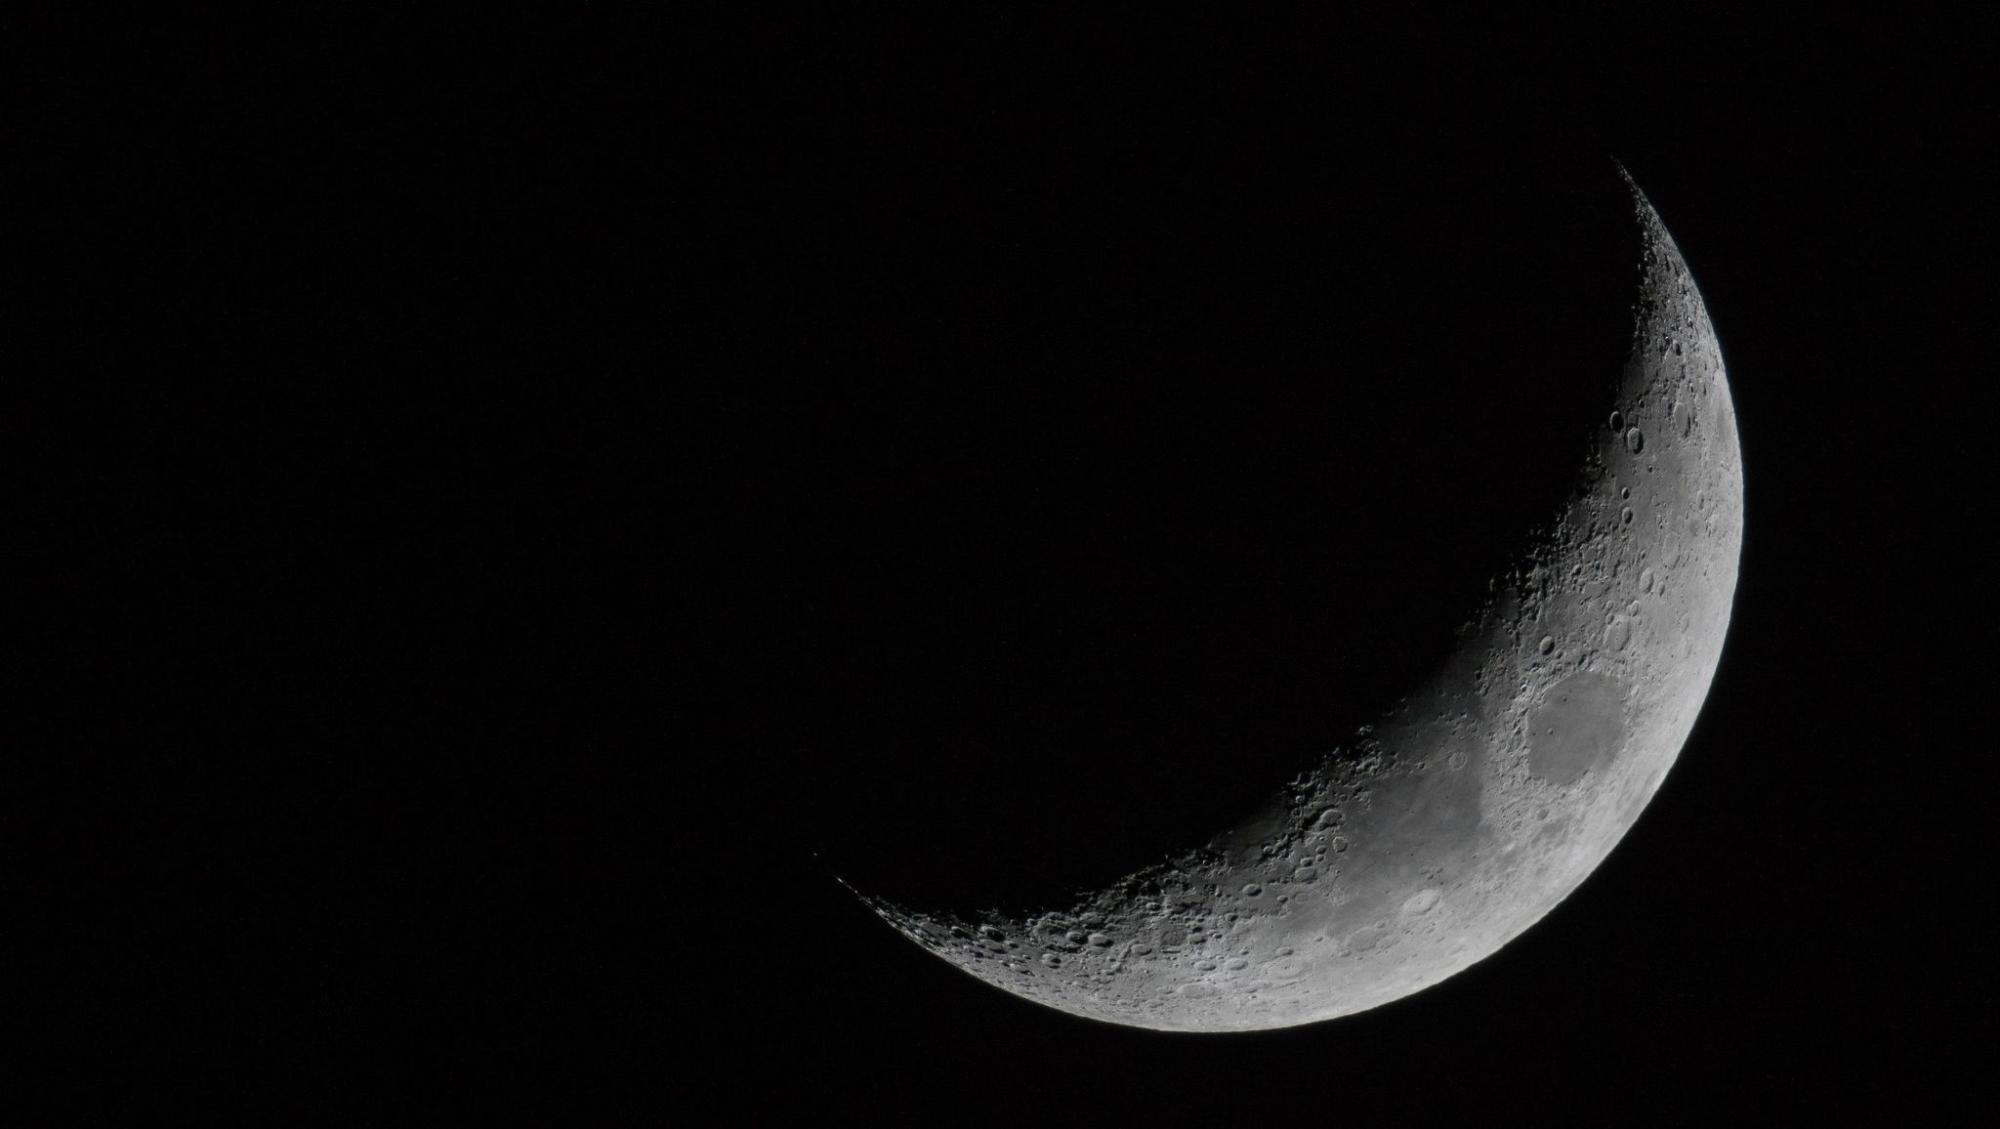 Imagen de referencia de la luna. Créditos: Getty Images